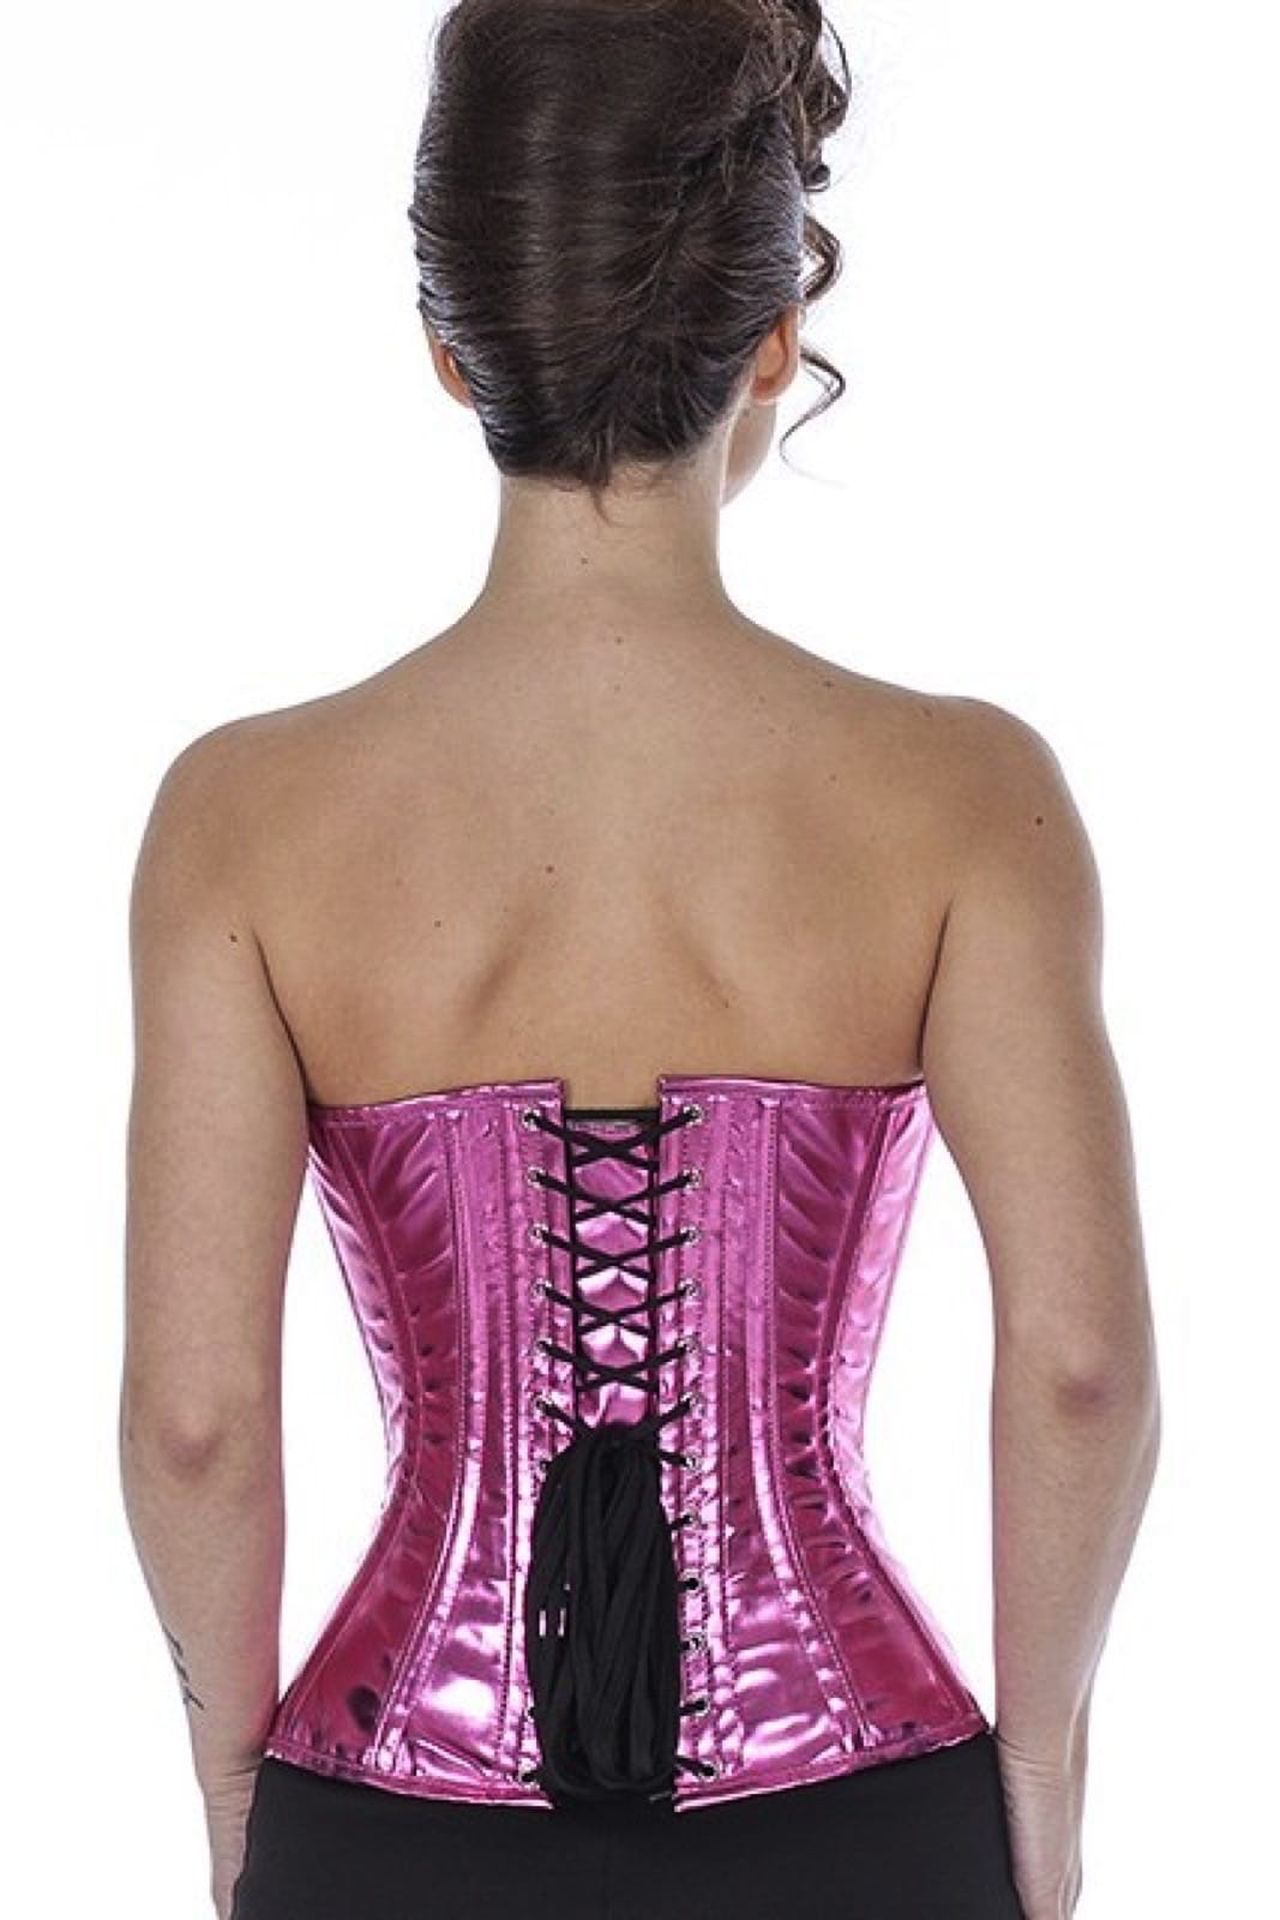 Corse pink glitter charol medio pecho corset phG7